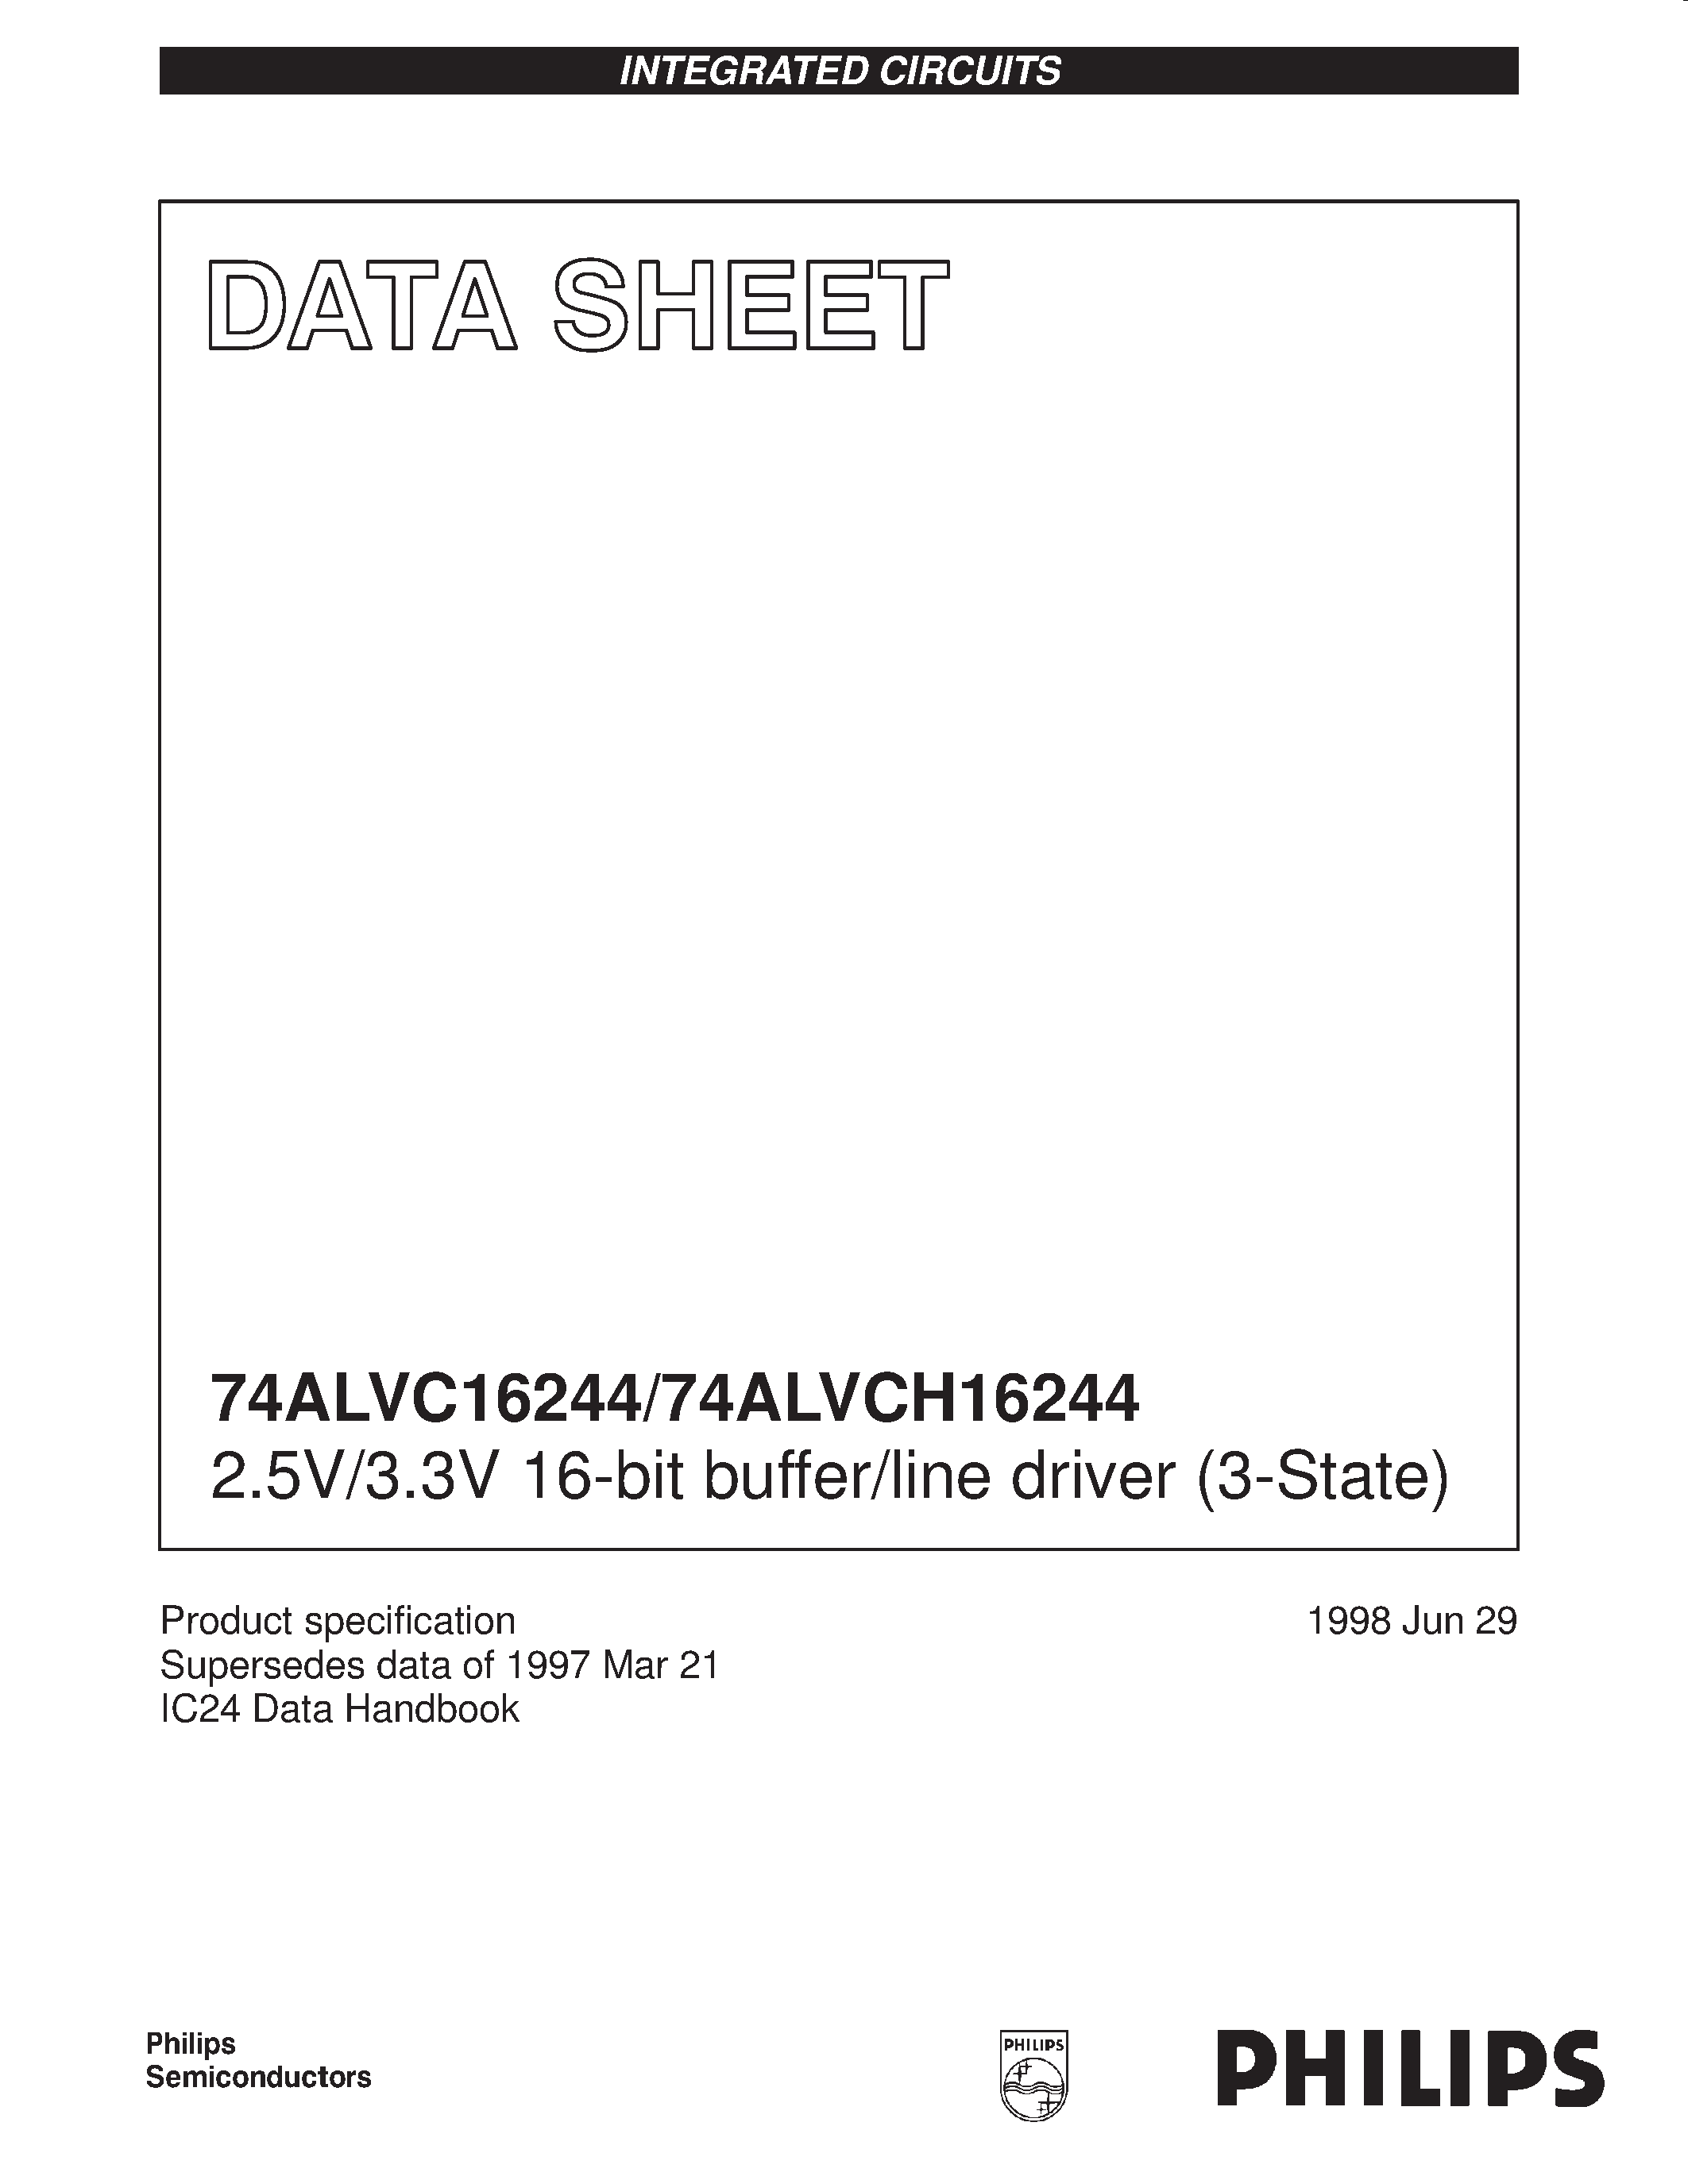 Datasheet 74ALVC16244DL - 2.5V/3.3V 16-bit buffer/line driver 3-State page 1